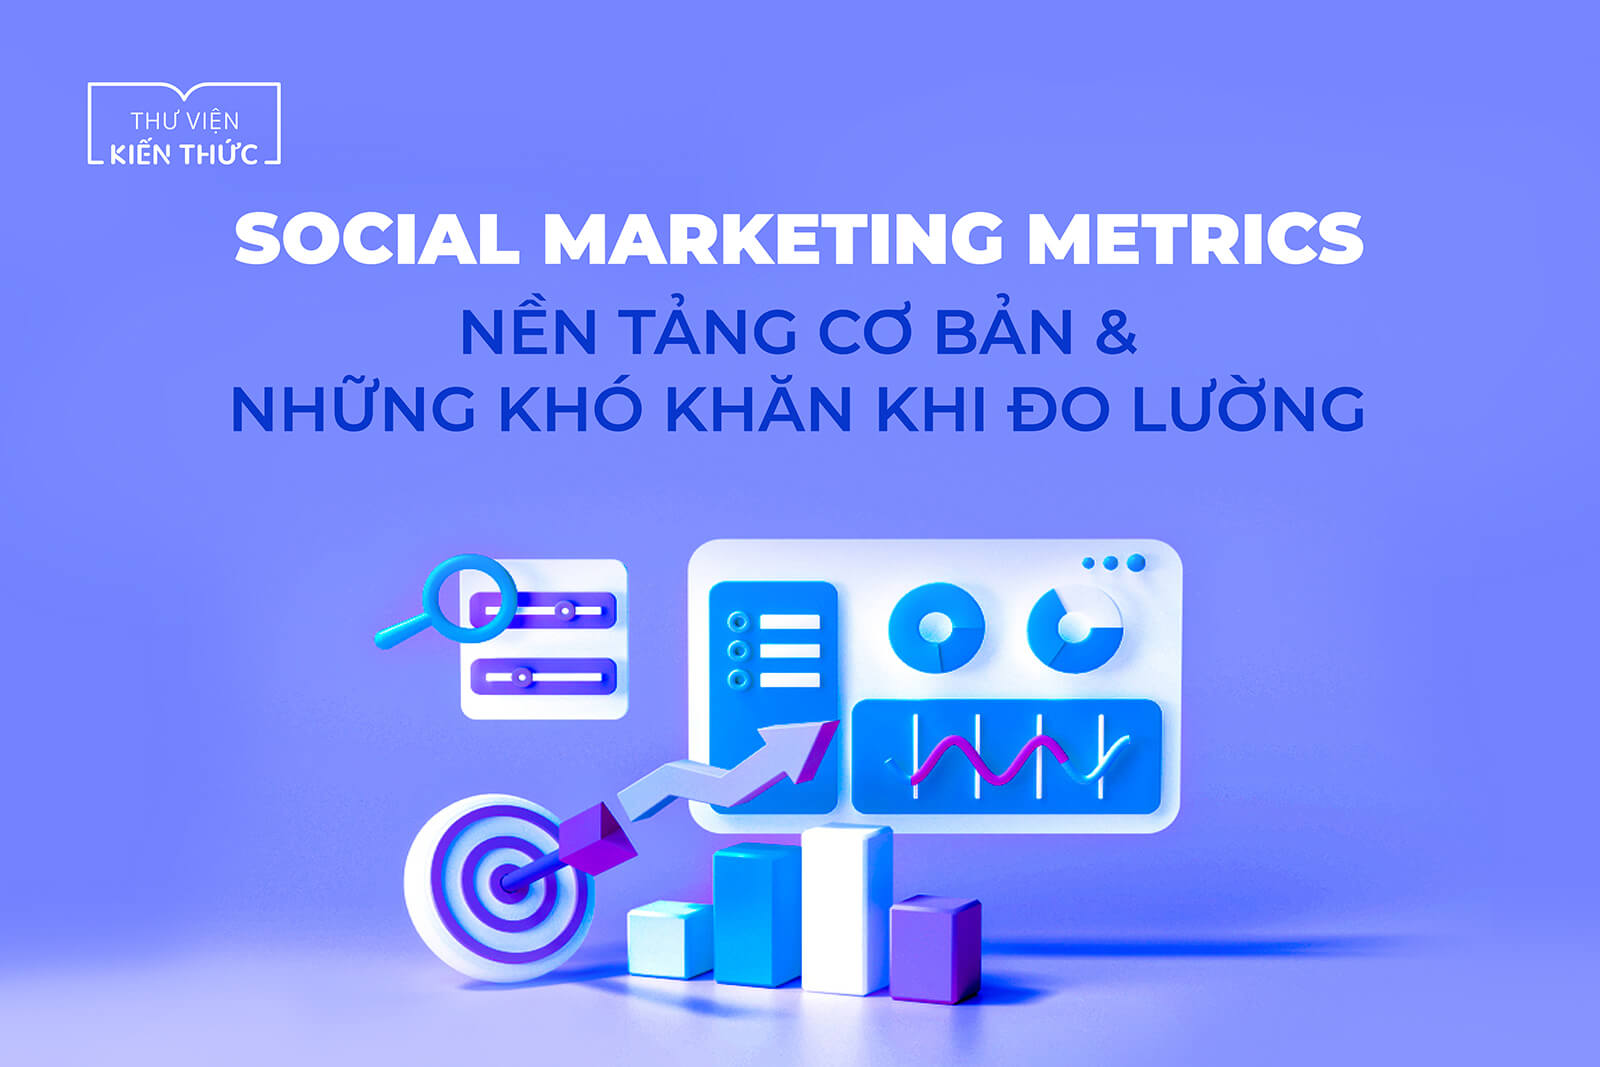 Social Marketing Metrics – Nền tảng cơ bản và những khó khăn khi đo lường